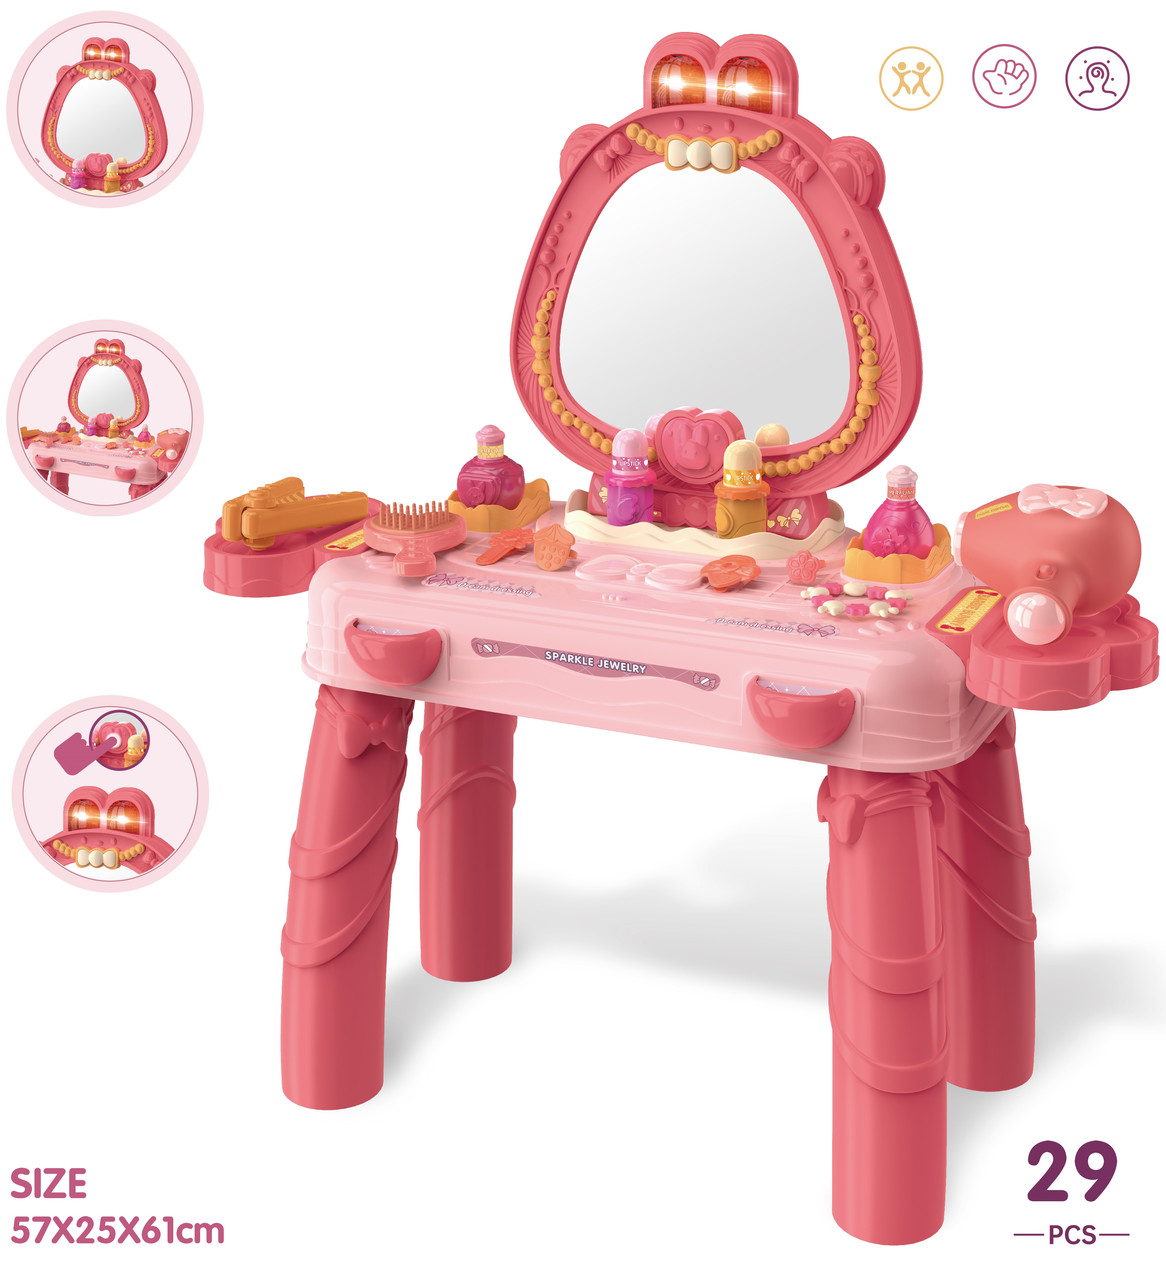 Детский туалетный столик, набор для девочки (57х25х61), арт. 8226